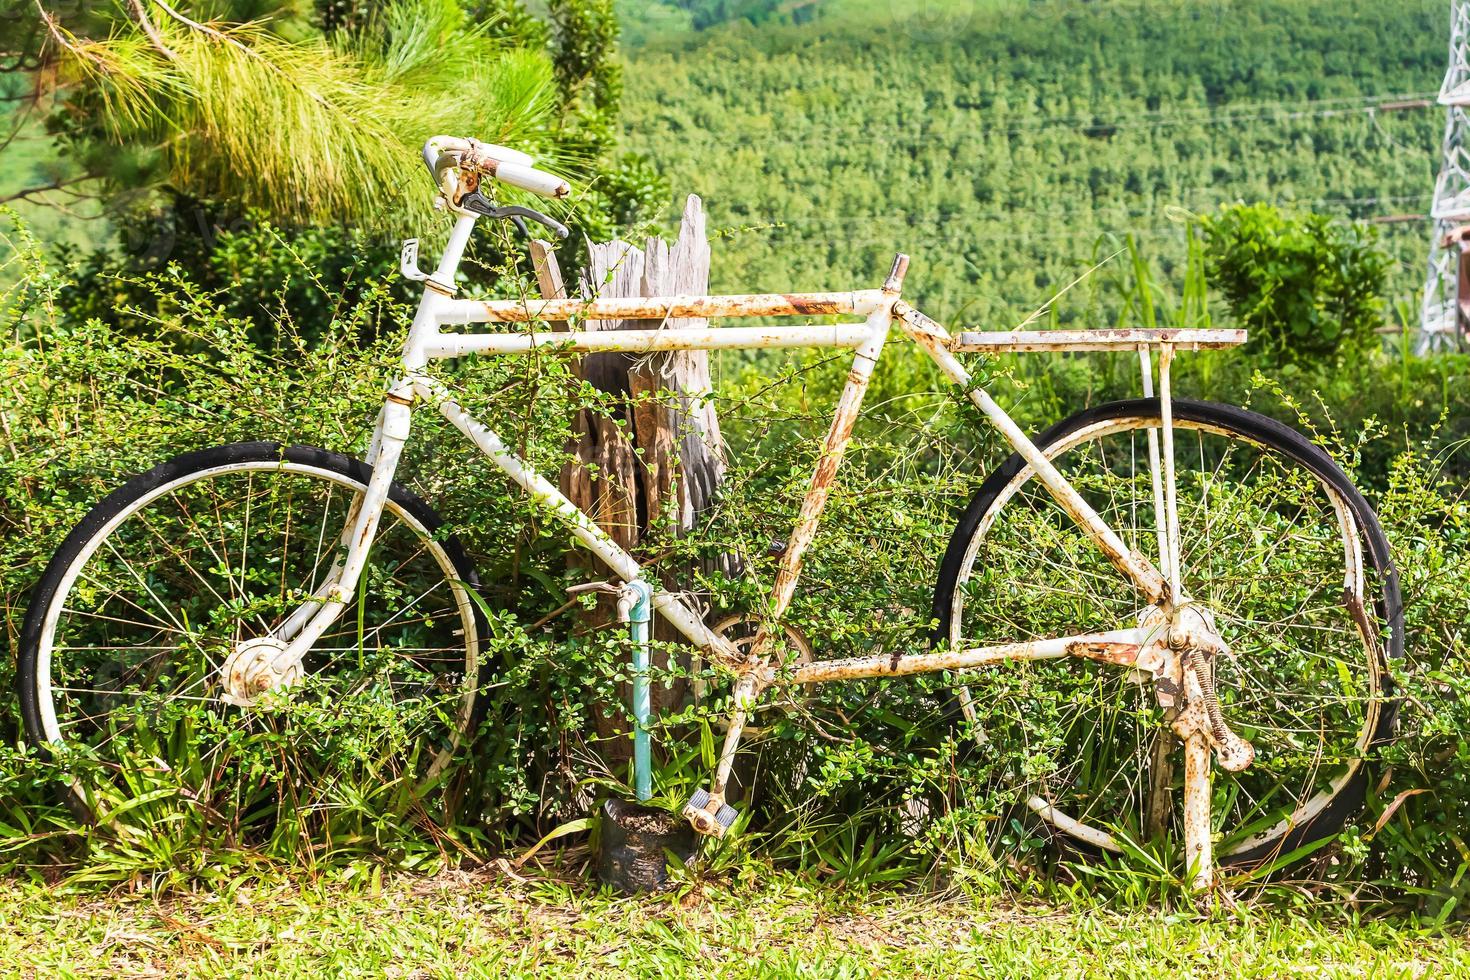 vieja bicicleta blanca con oxidado en el jardín foto